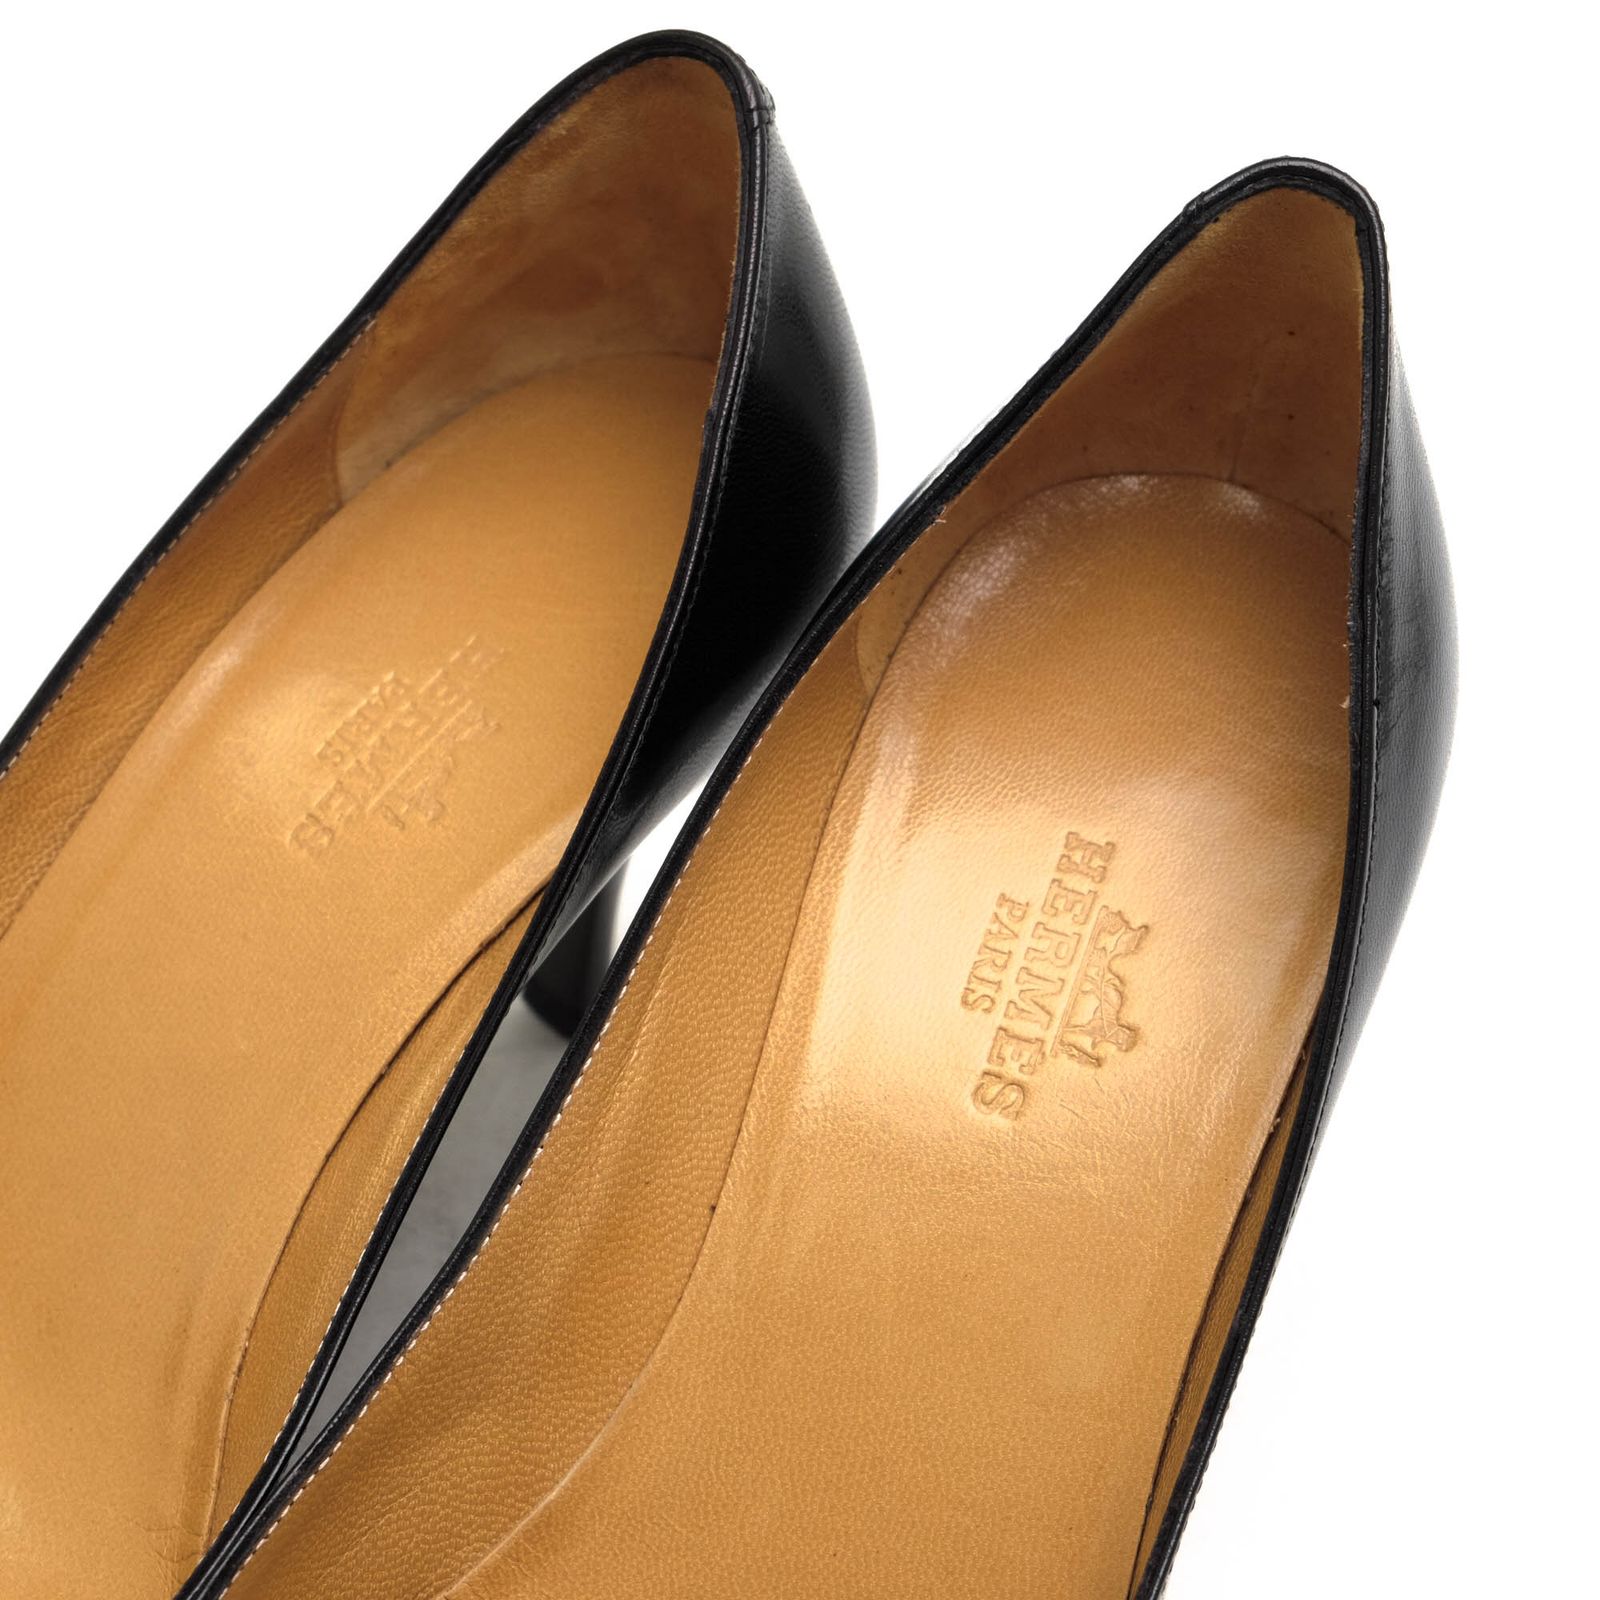 エルメス／HERMES パンプス シューズ 靴 レディース 女性 女性用レザー 革 本革 ブラック 黒 ポインテッドトゥ